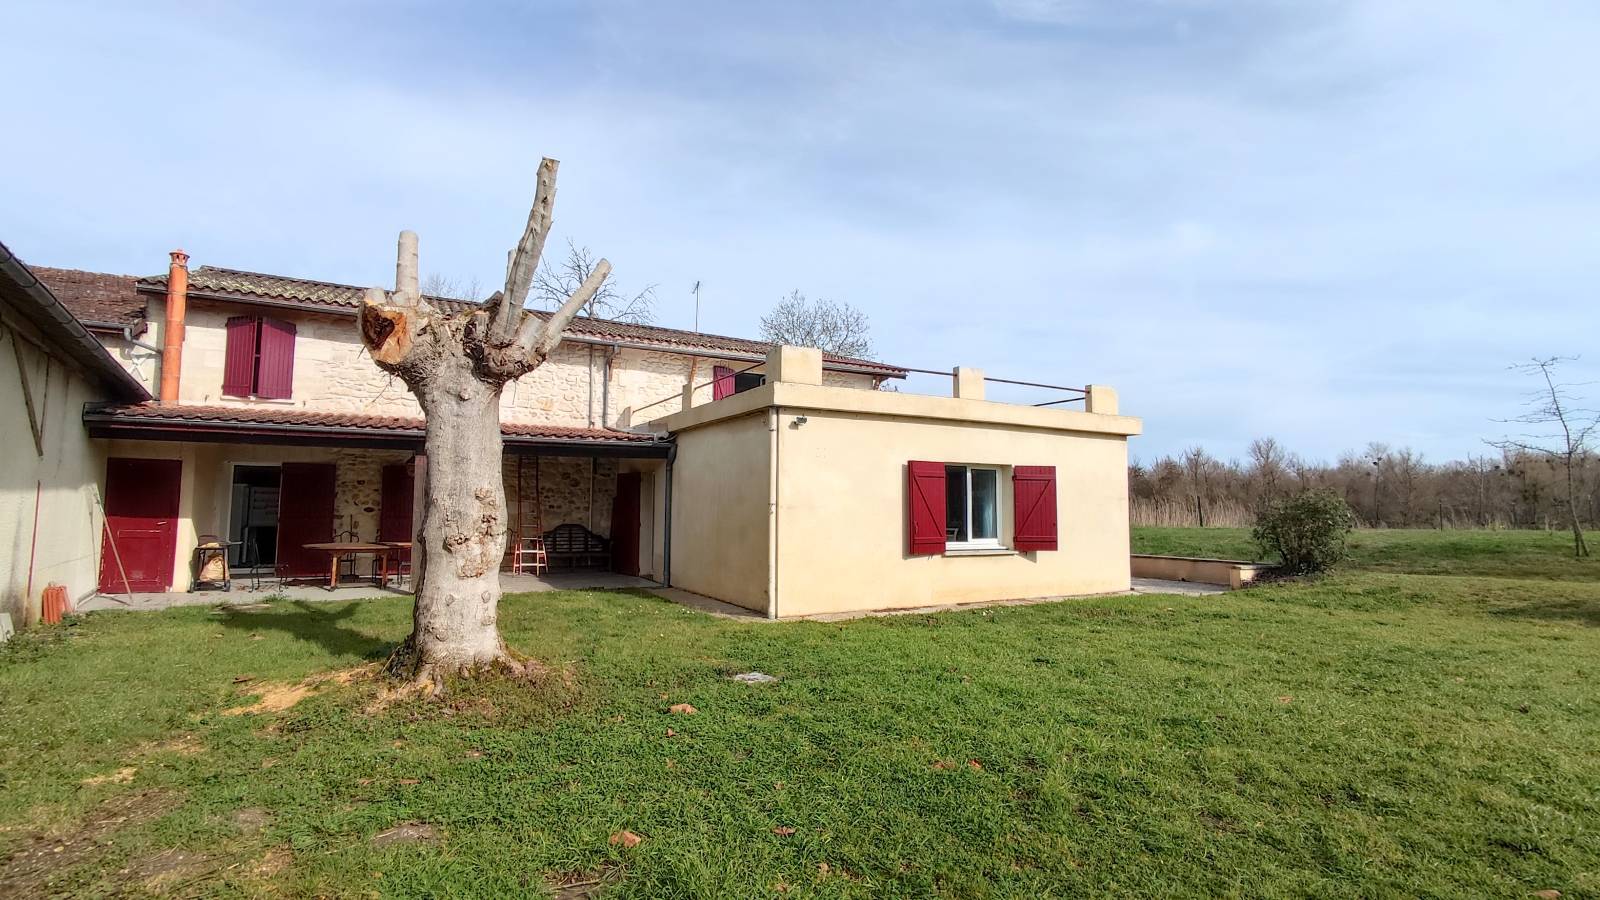 Location maison individuelle meublée 202 m² avec vue sur Garonne